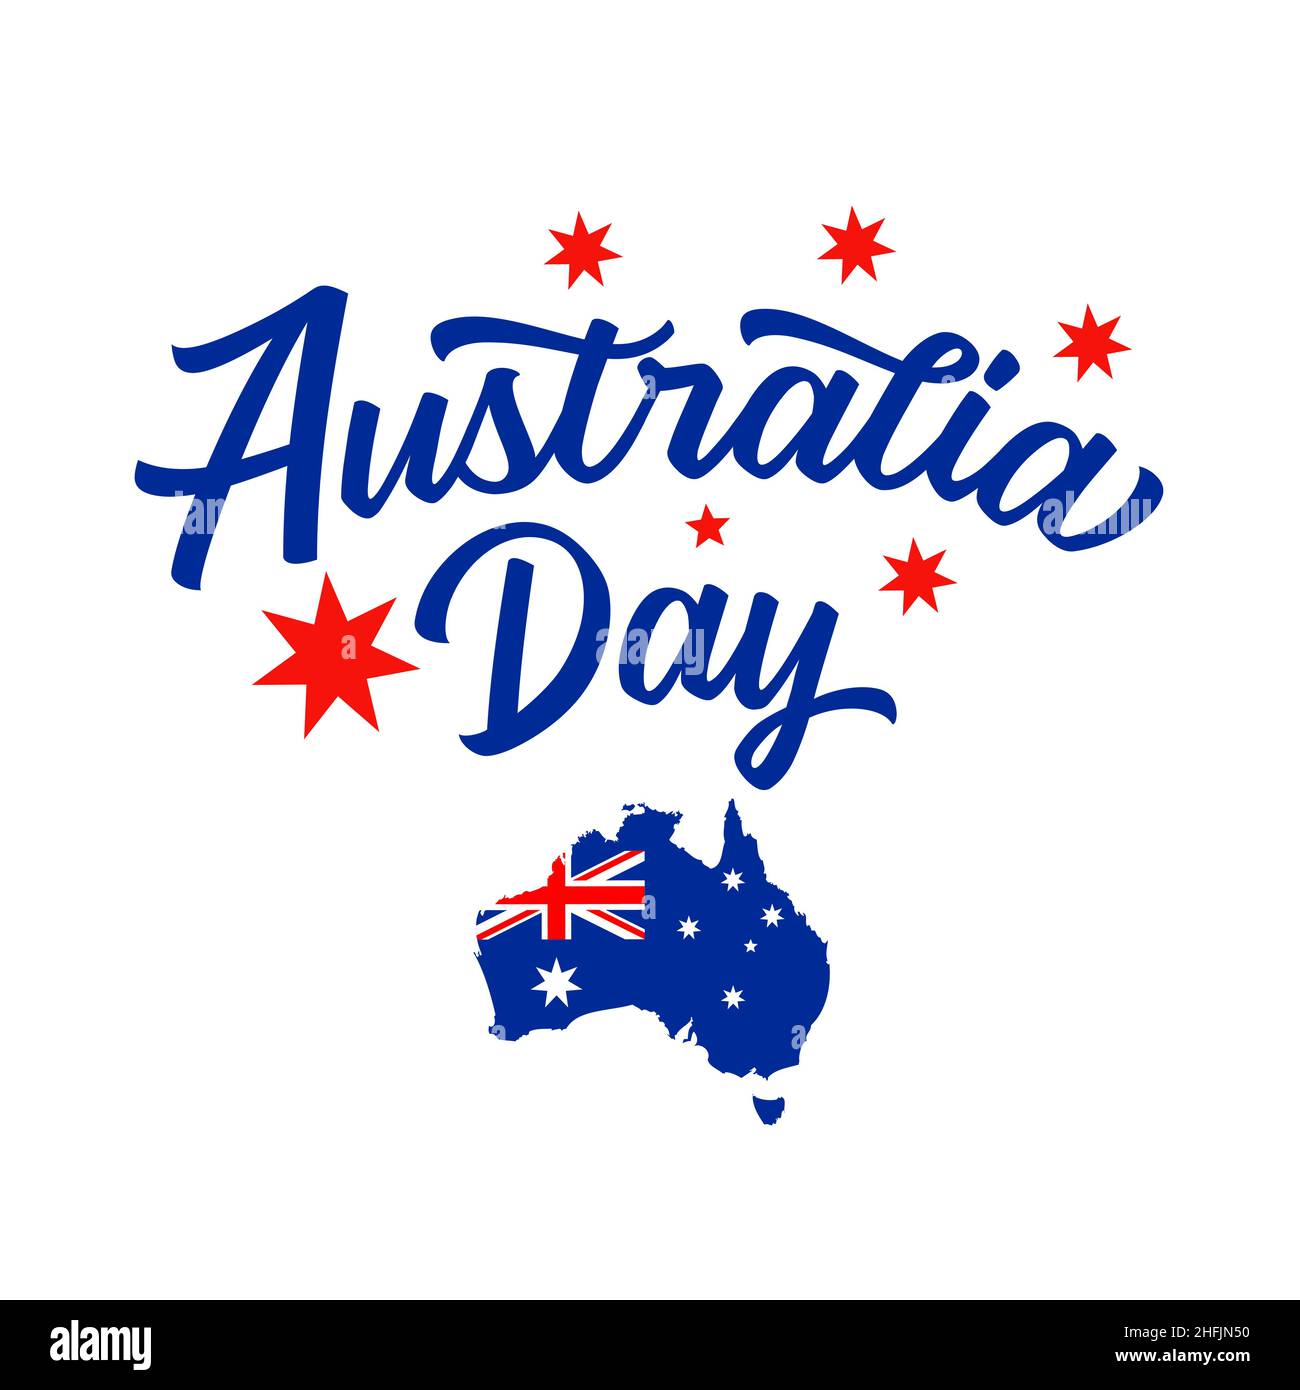 Lettrage à l'Australia Day et carte australienne avec drapeau.Carte de l'Australie avec la décoration du drapeau national et texte de salutation.Illustration vectorielle Illustration de Vecteur